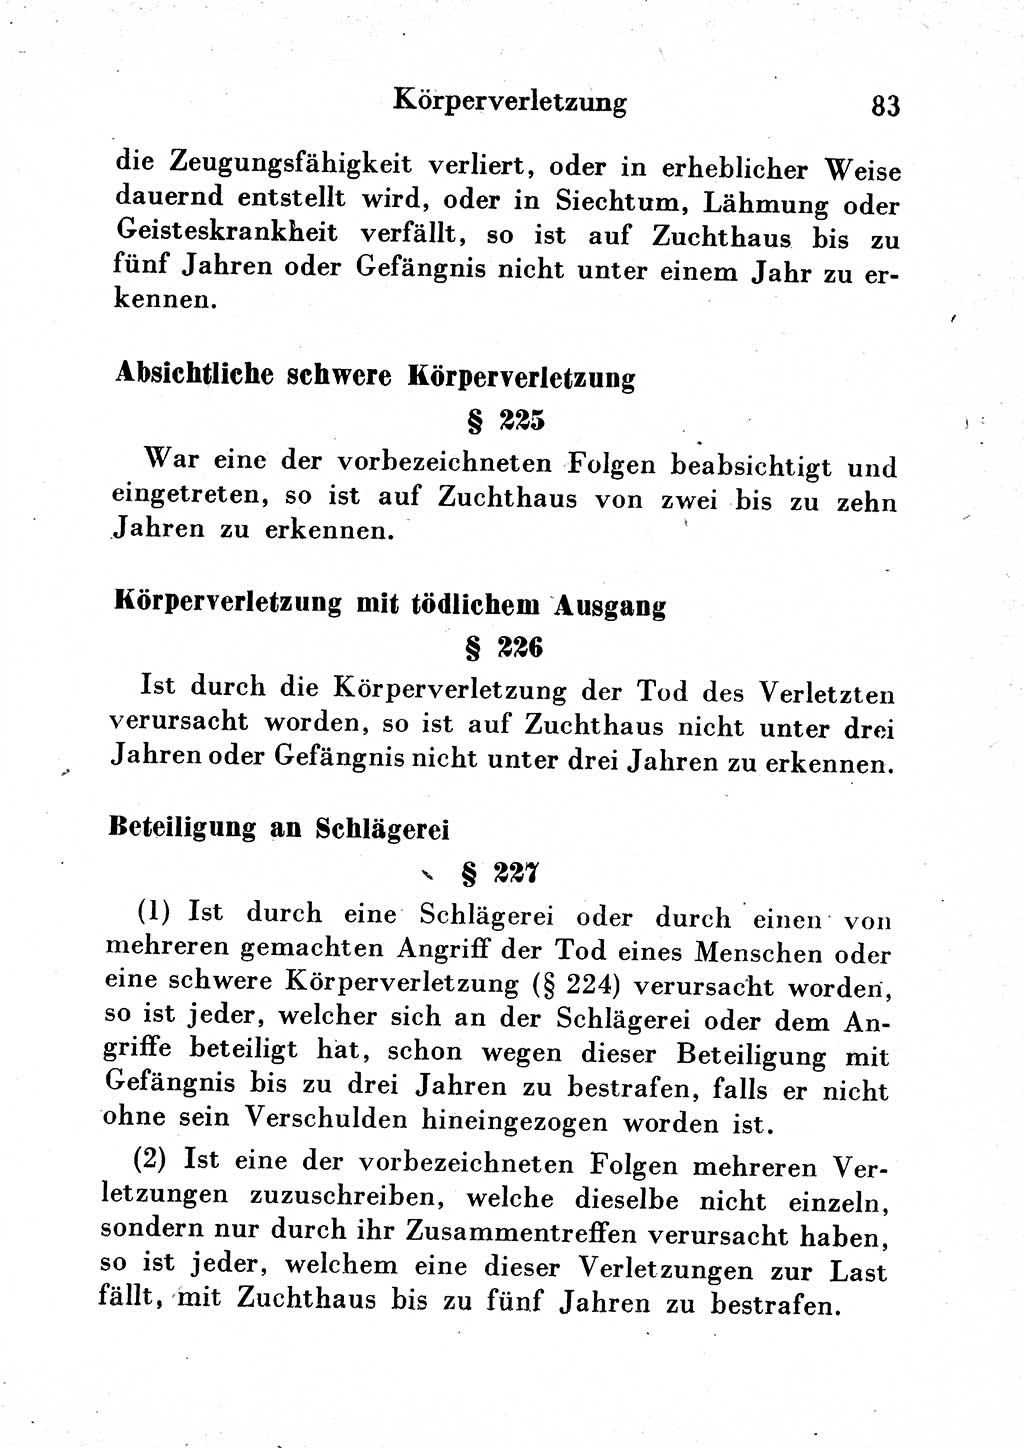 Strafgesetzbuch (StGB) und andere Strafgesetze [Deutsche Demokratische Republik (DDR)] 1954, Seite 83 (StGB Strafges. DDR 1954, S. 83)